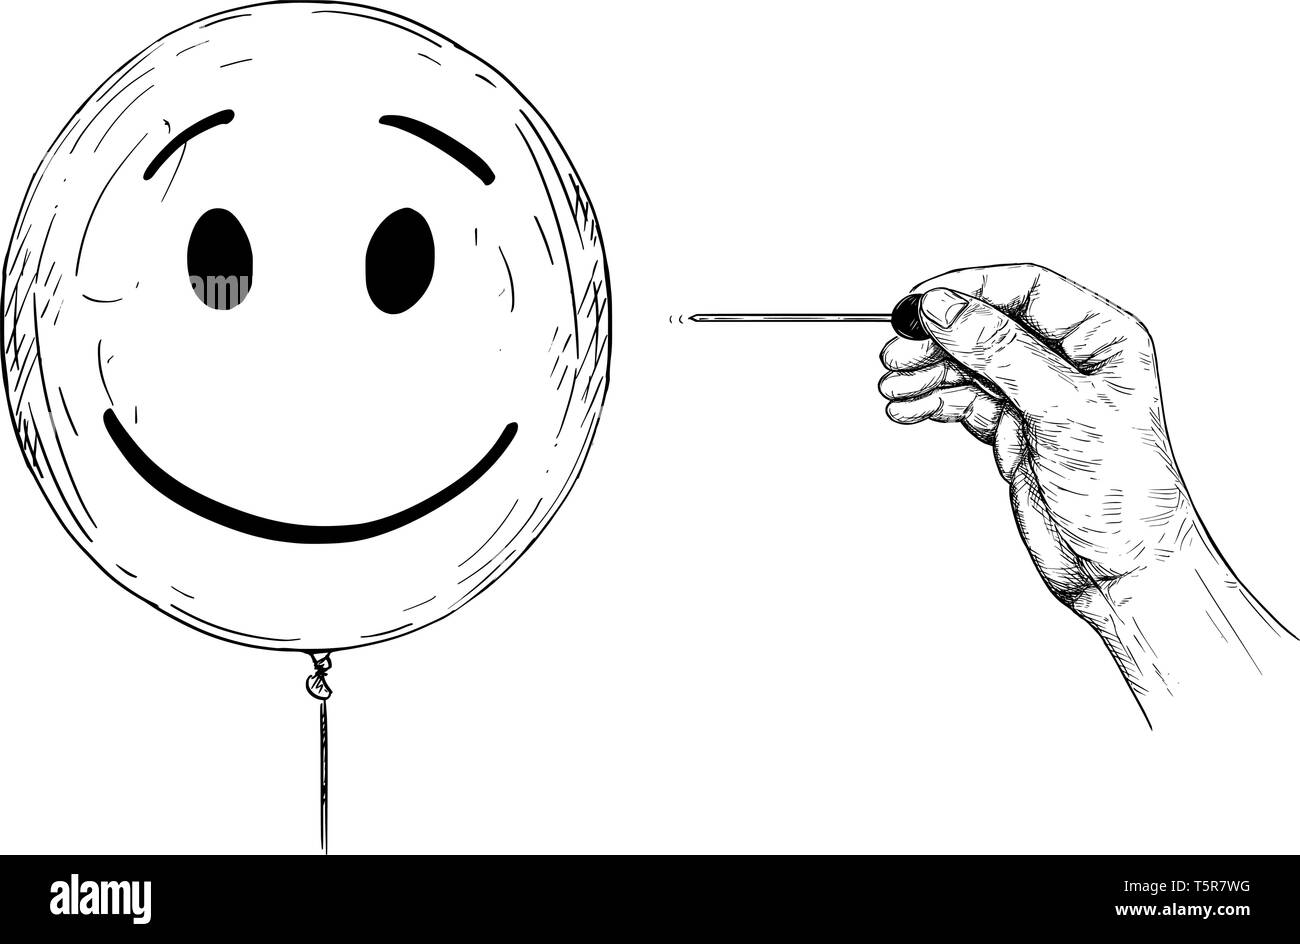 Cartoon Zeichnung konzeptuelle Darstellung von Hand mit Nadel oder Klemme knallen Ballon mit menschlichem Antlitz, der Persönlichkeit und der psychischen Gesundheit. Stock Vektor